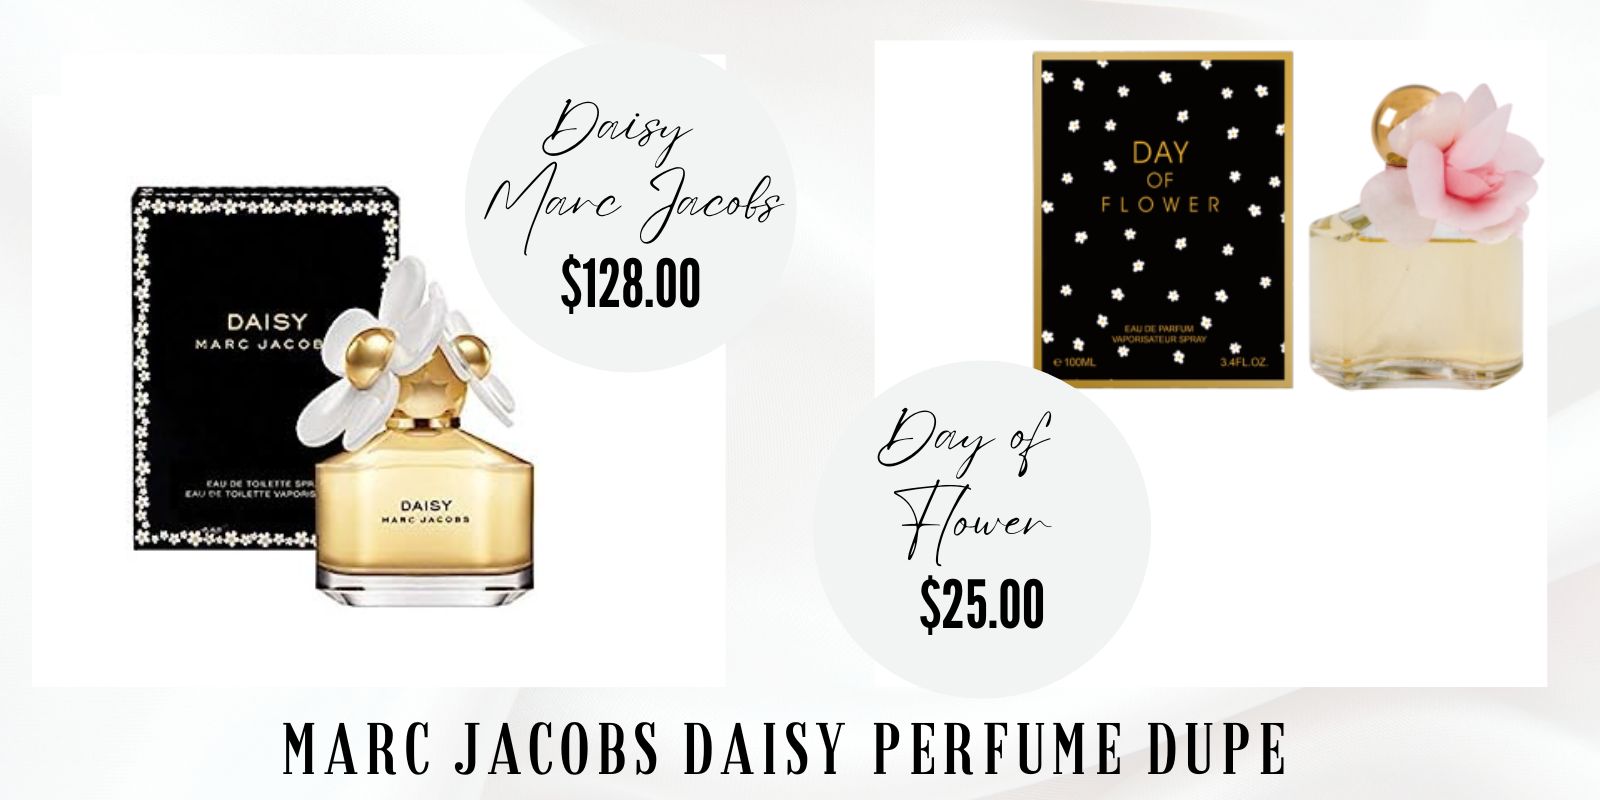 Marc Jacobs Daisy Perfume Dupe: Day Of Flower Eau de Parfum 